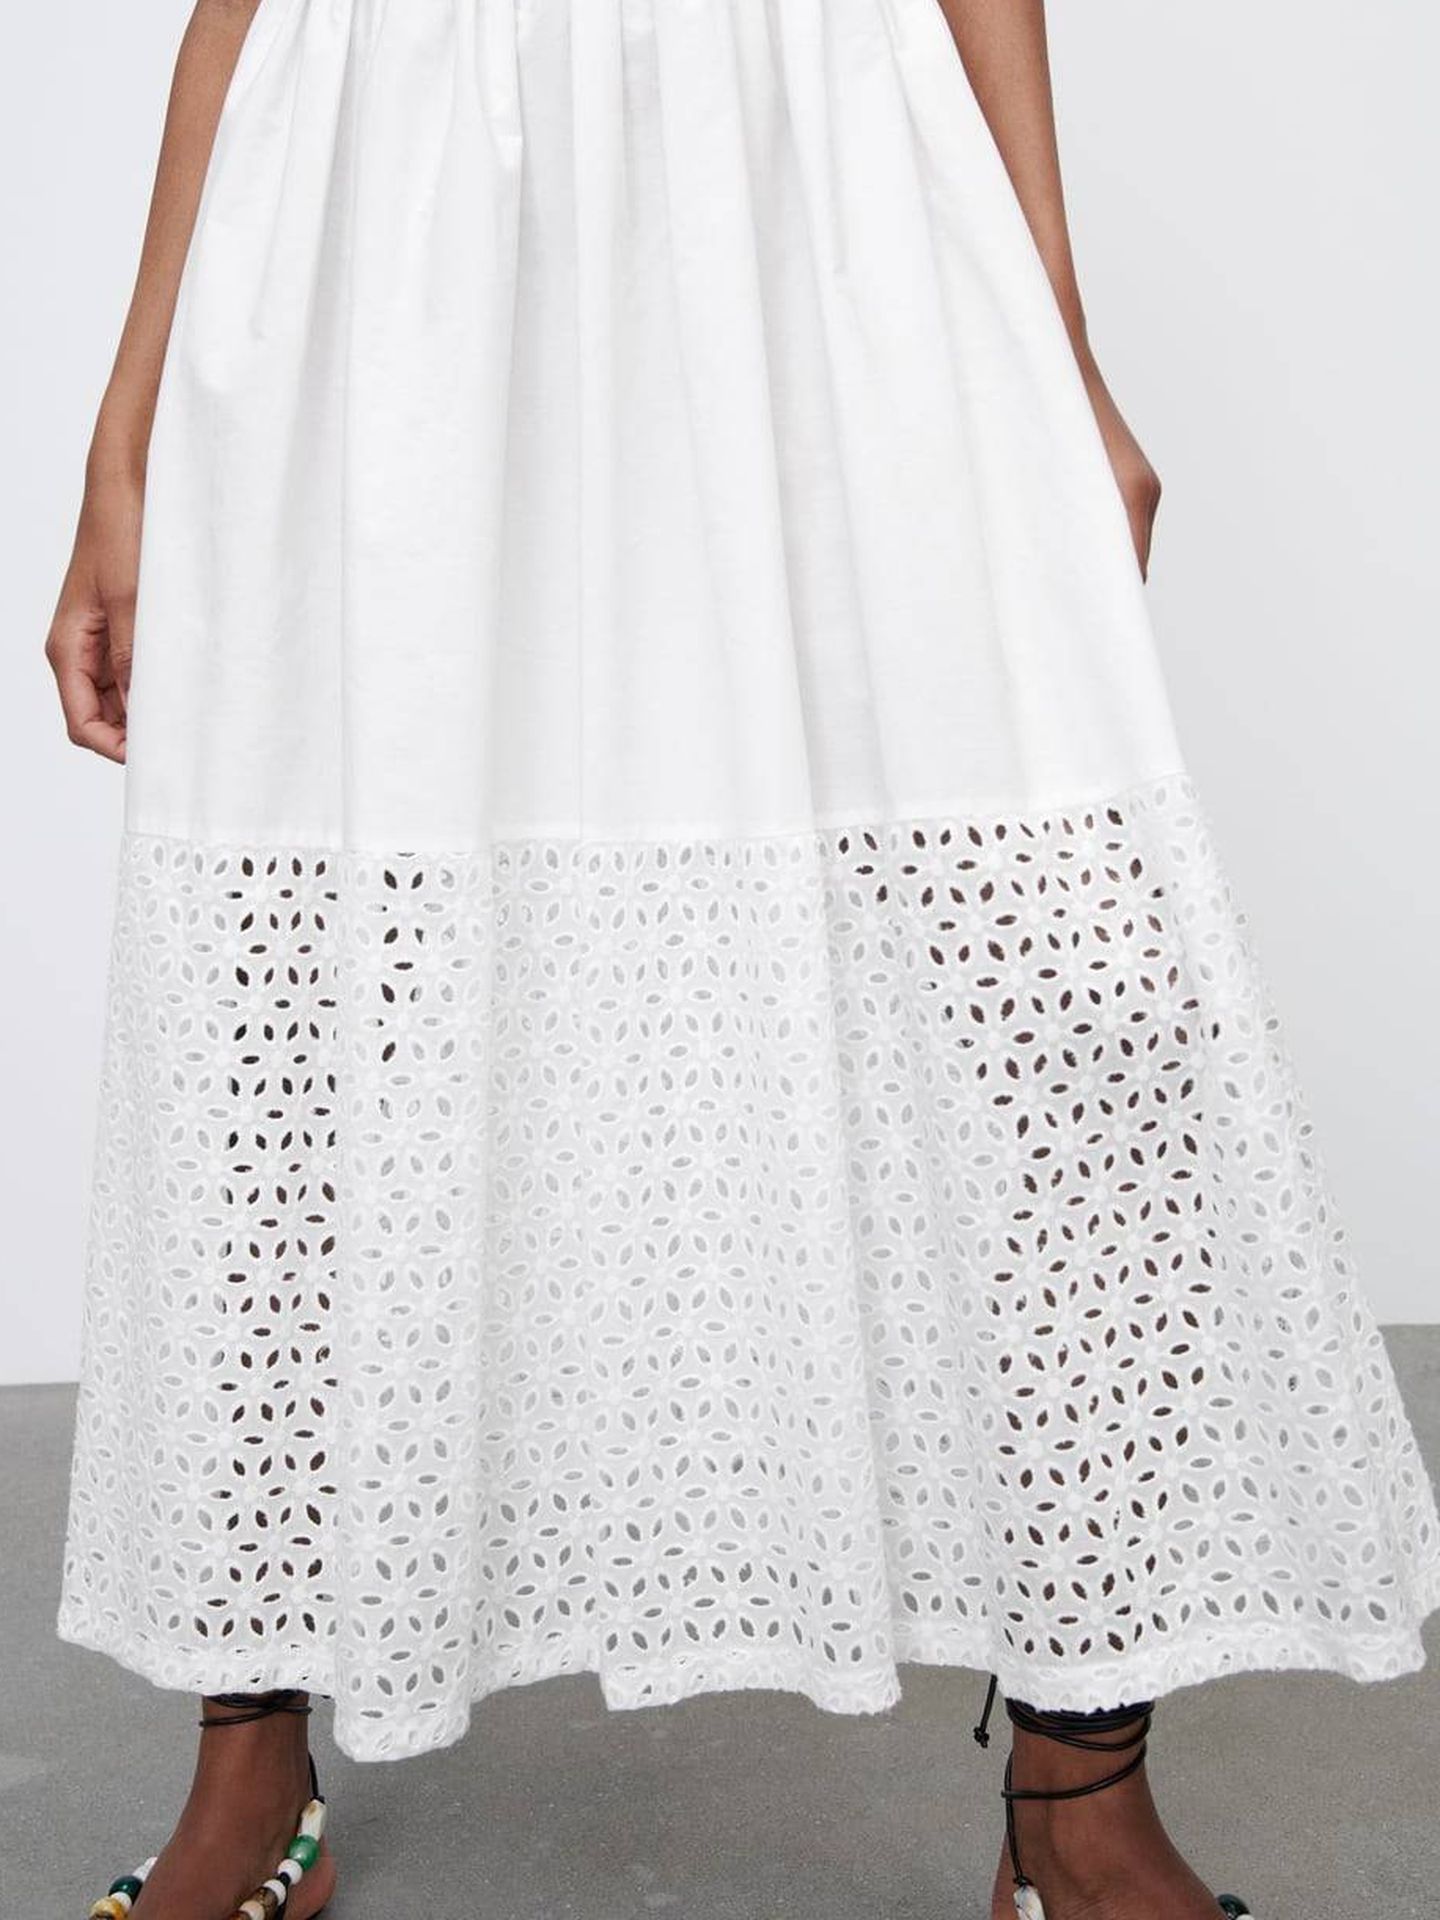 Vestido blanco de Zara. (Cortesía)